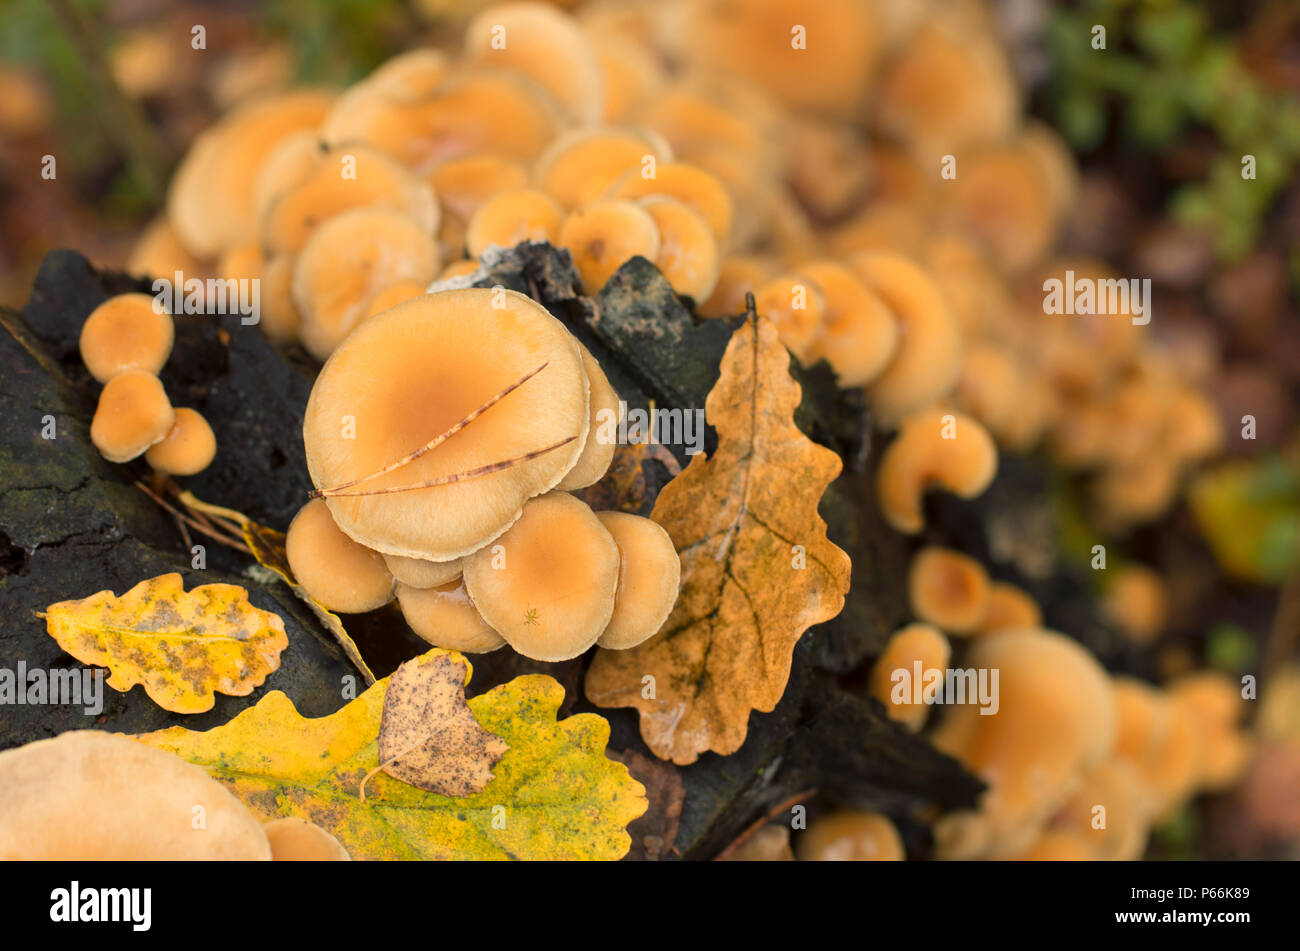 Colonia di funghi su un tronco di albero con foglie cadute in autunno la vista dall'alto Foto Stock